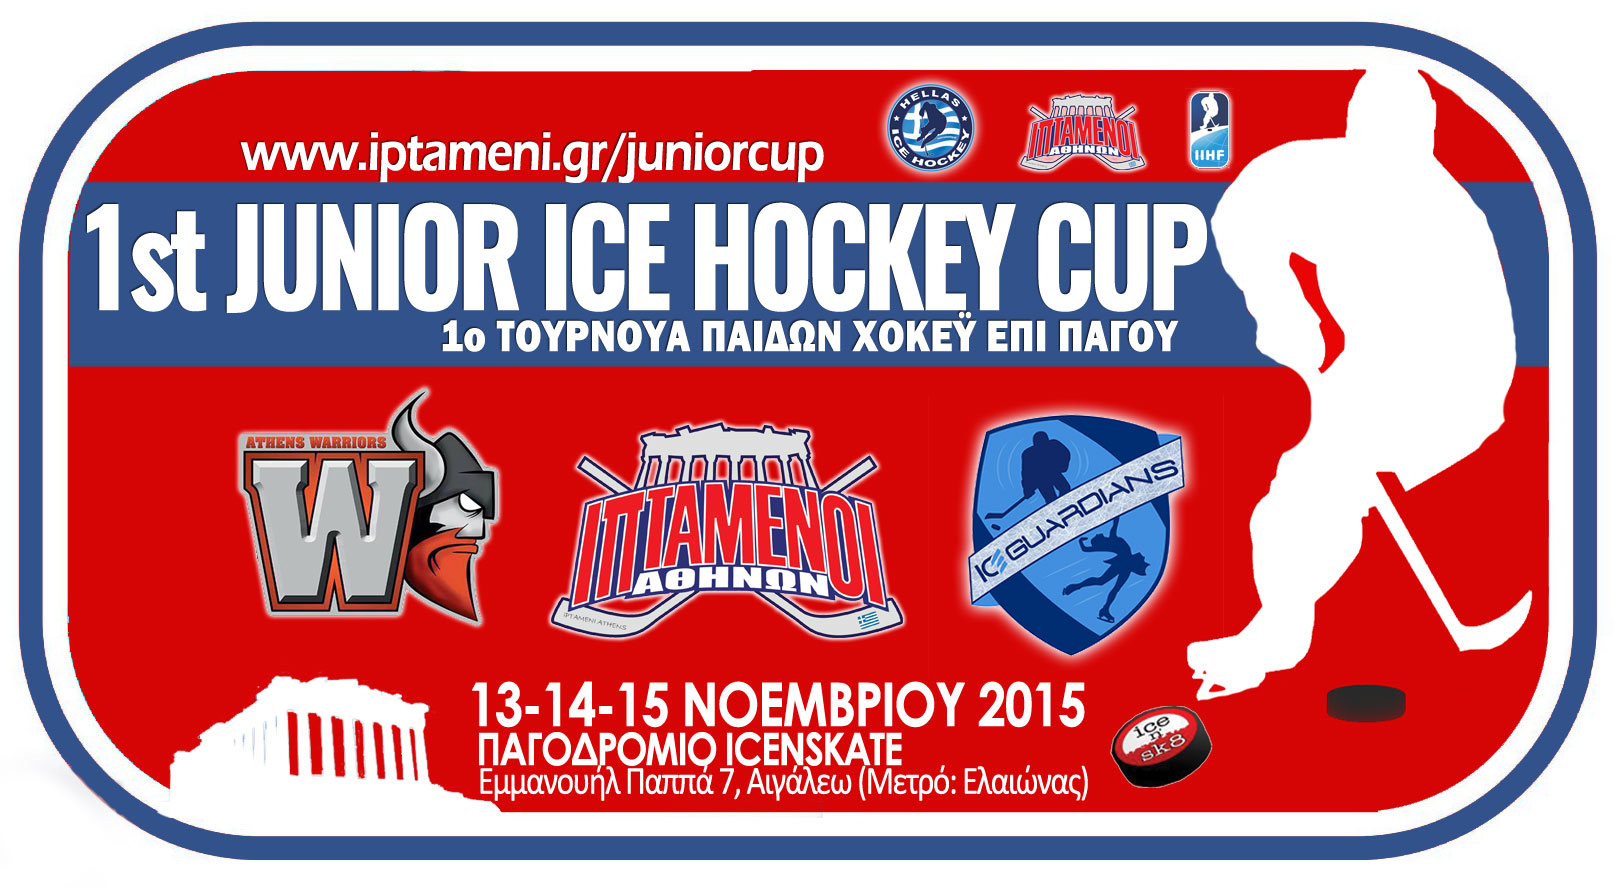 1st Junior Ice Hockey Cup 1st JUNIOR ICE HOCKEY CUP